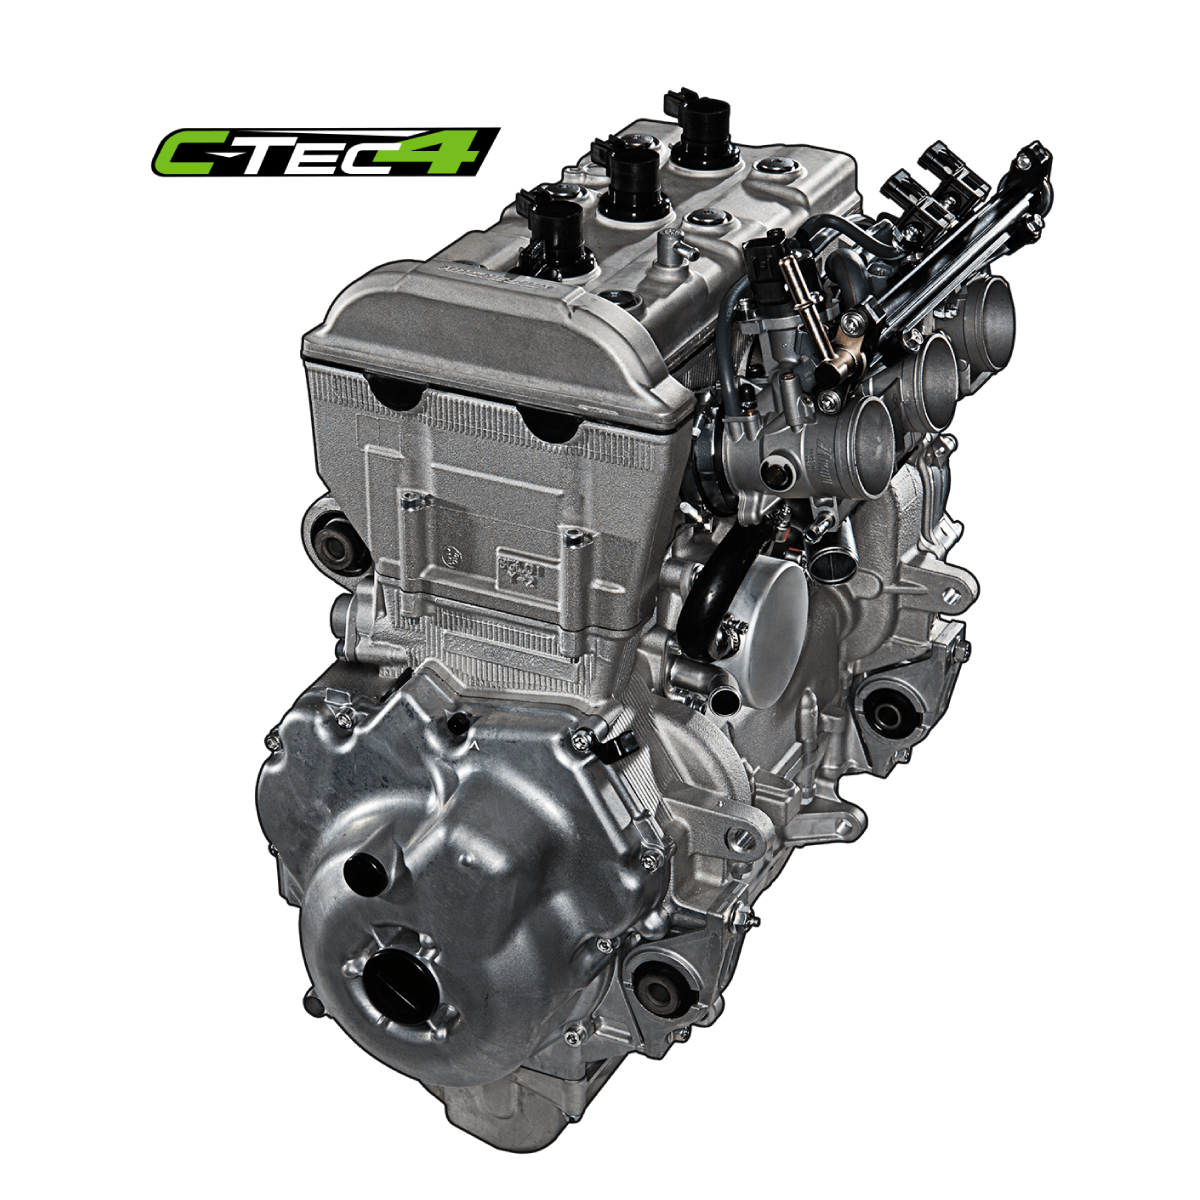 7000 C-TEC4 Engine